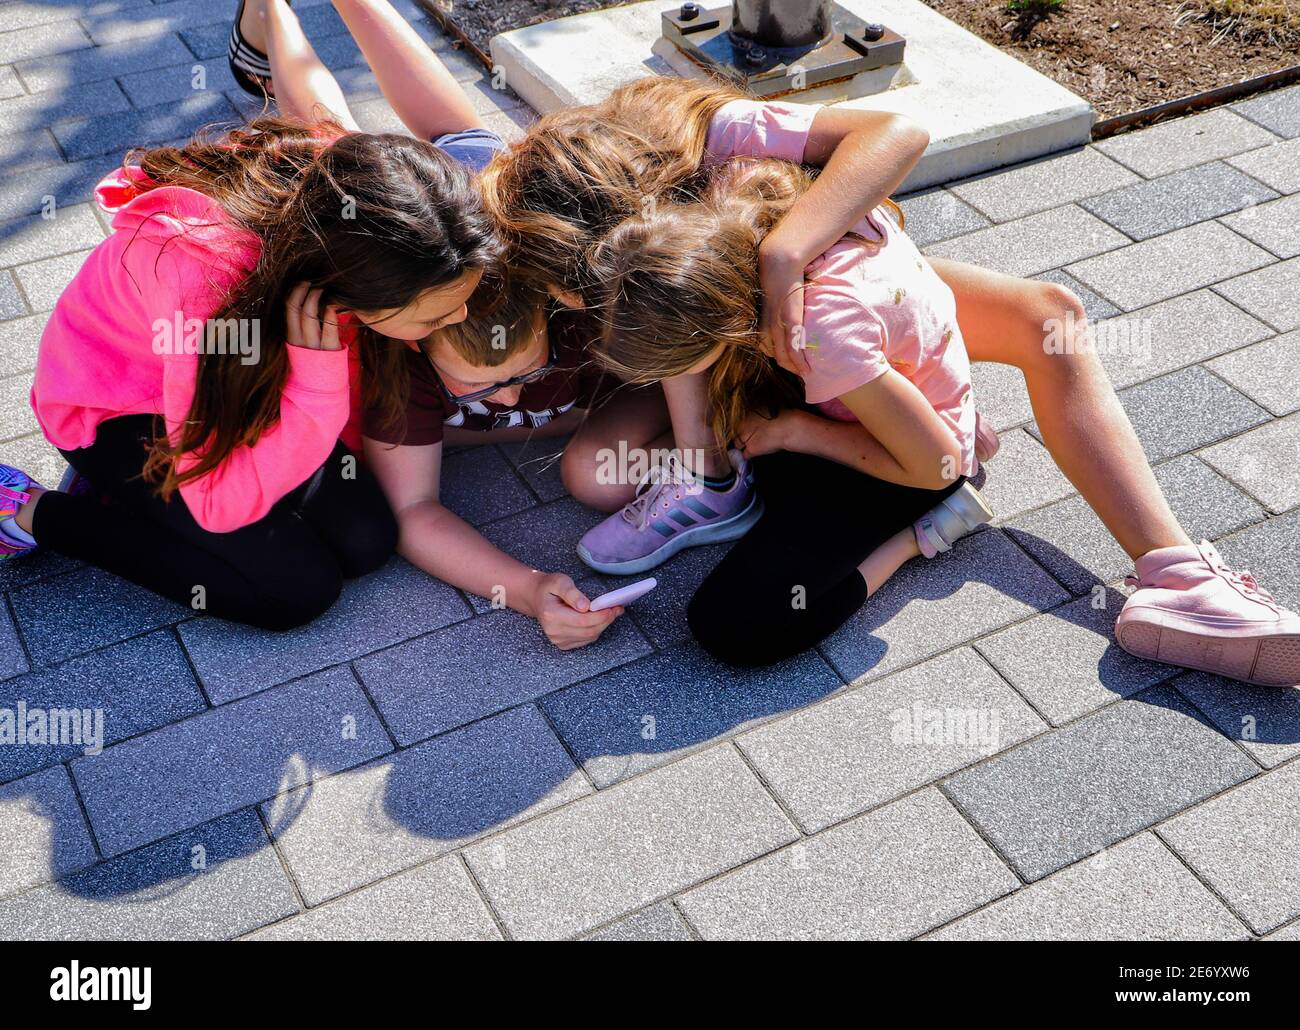 Quattro amici, tre ragazze e un ragazzo, con le braccia l'una intorno all'altra piegate in modo da poter tutti guardare lo schermo del telefono cellulare. Seduti su asfaltatrici. Foto Stock